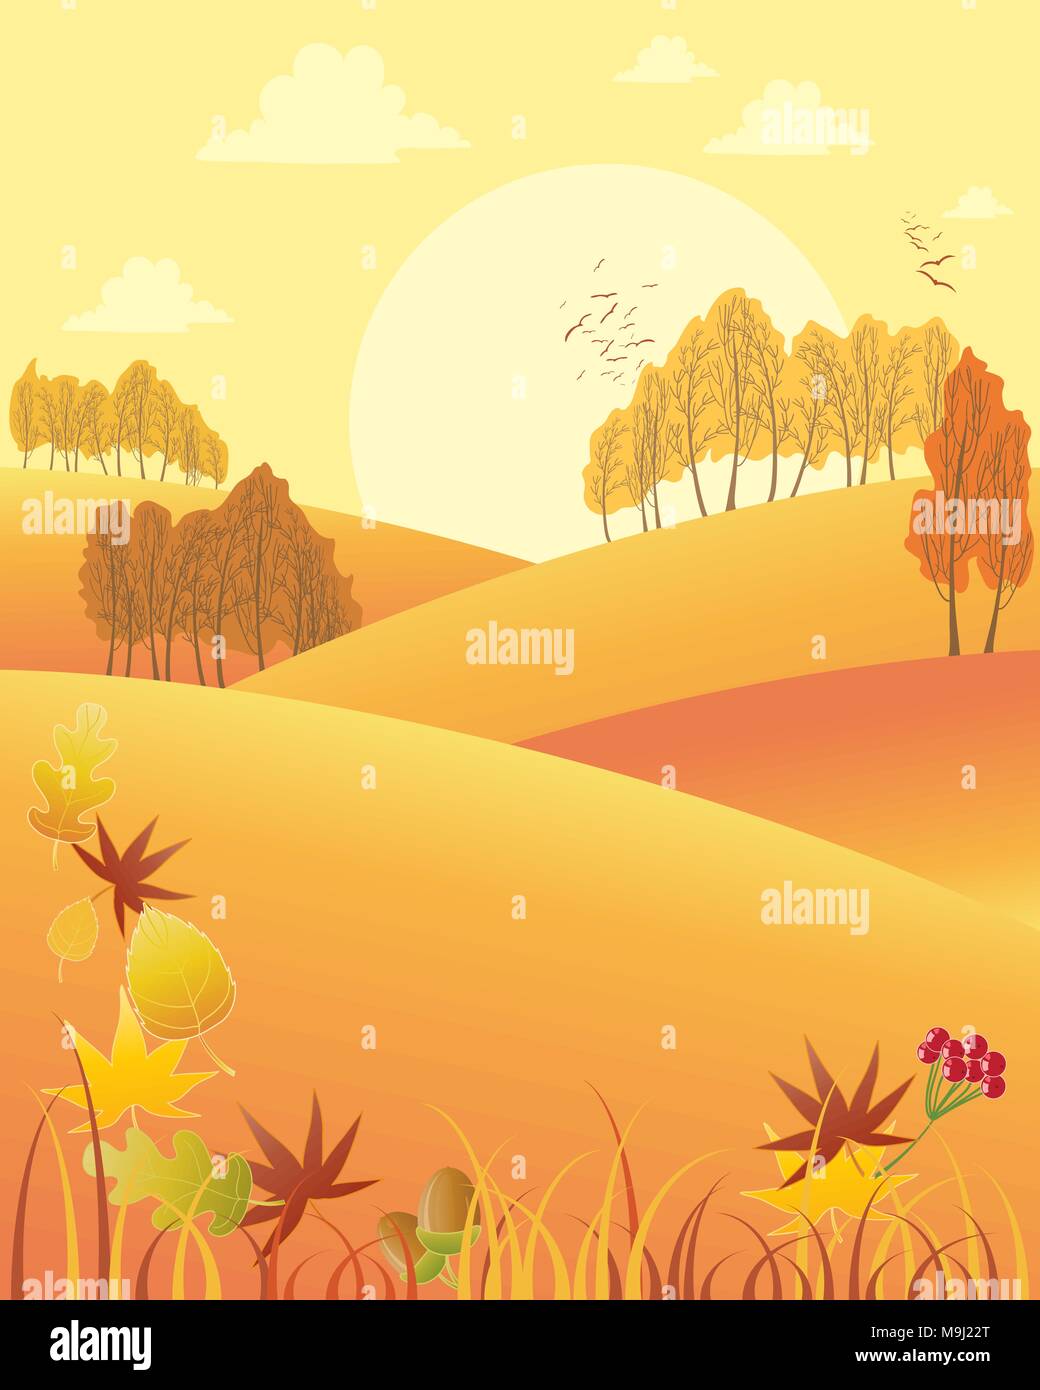 Una illustrazione vettoriale in formato eps formato 10 di un rurale autumn fall pomeriggio con dolci colline colorate alberi e foglie cadute, Illustrazione Vettoriale